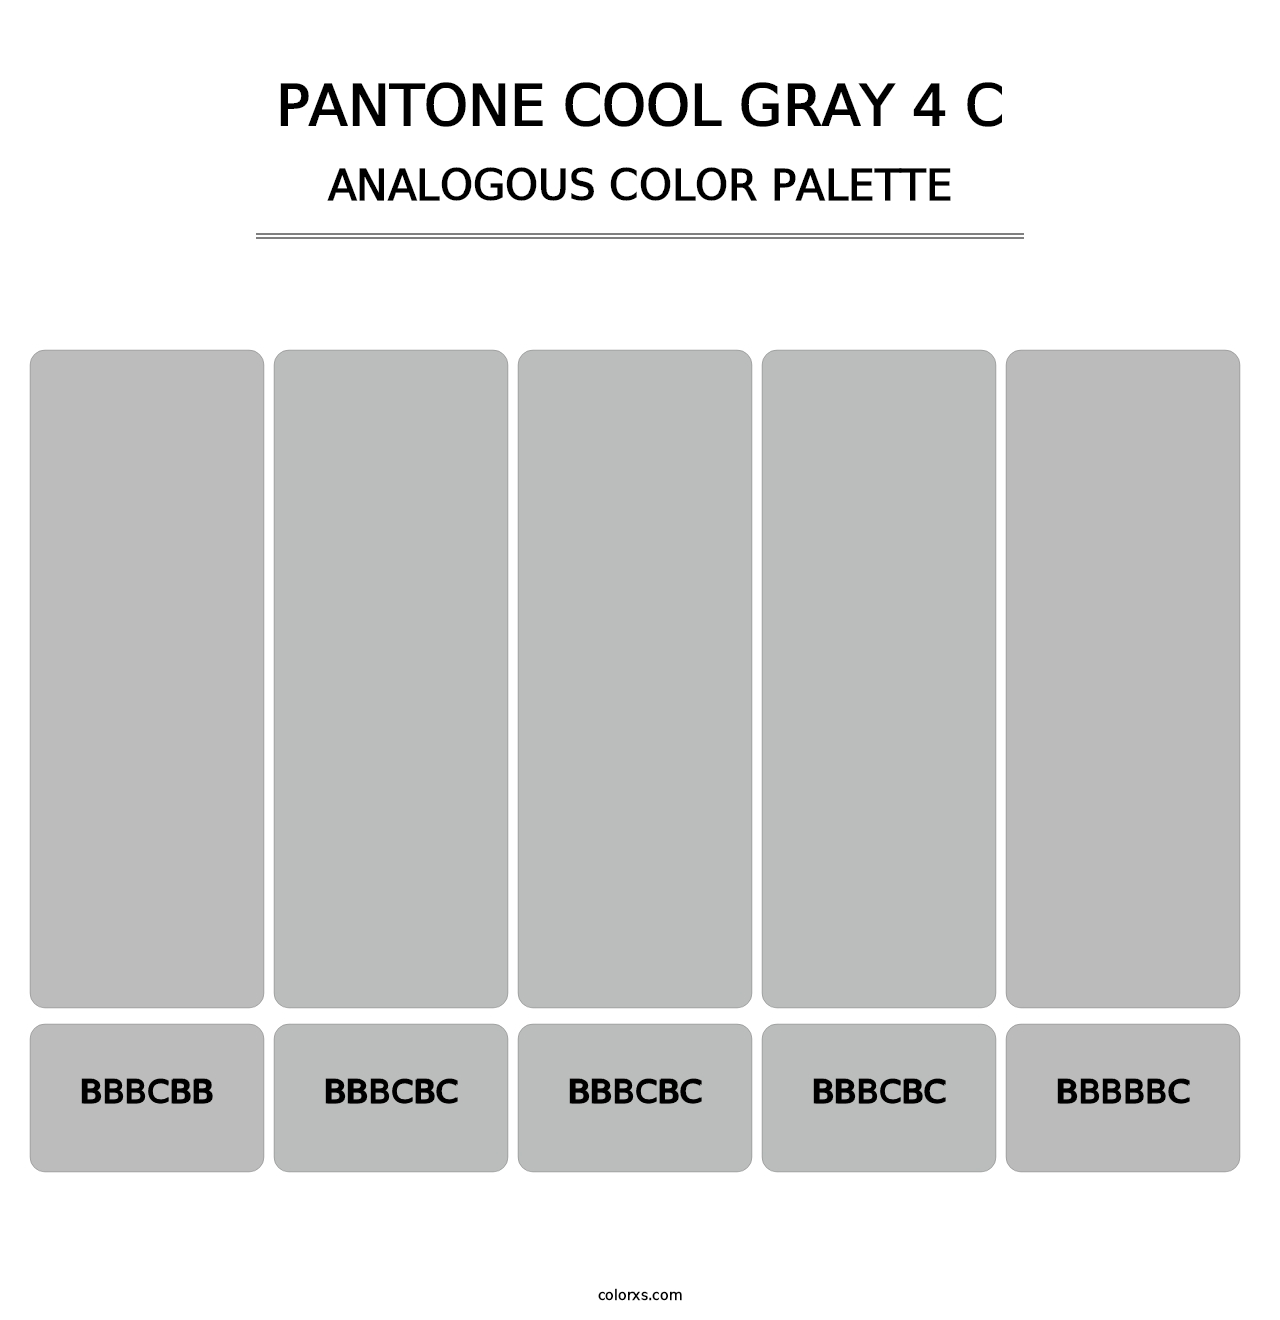 PANTONE Cool Gray 4 C - Analogous Color Palette